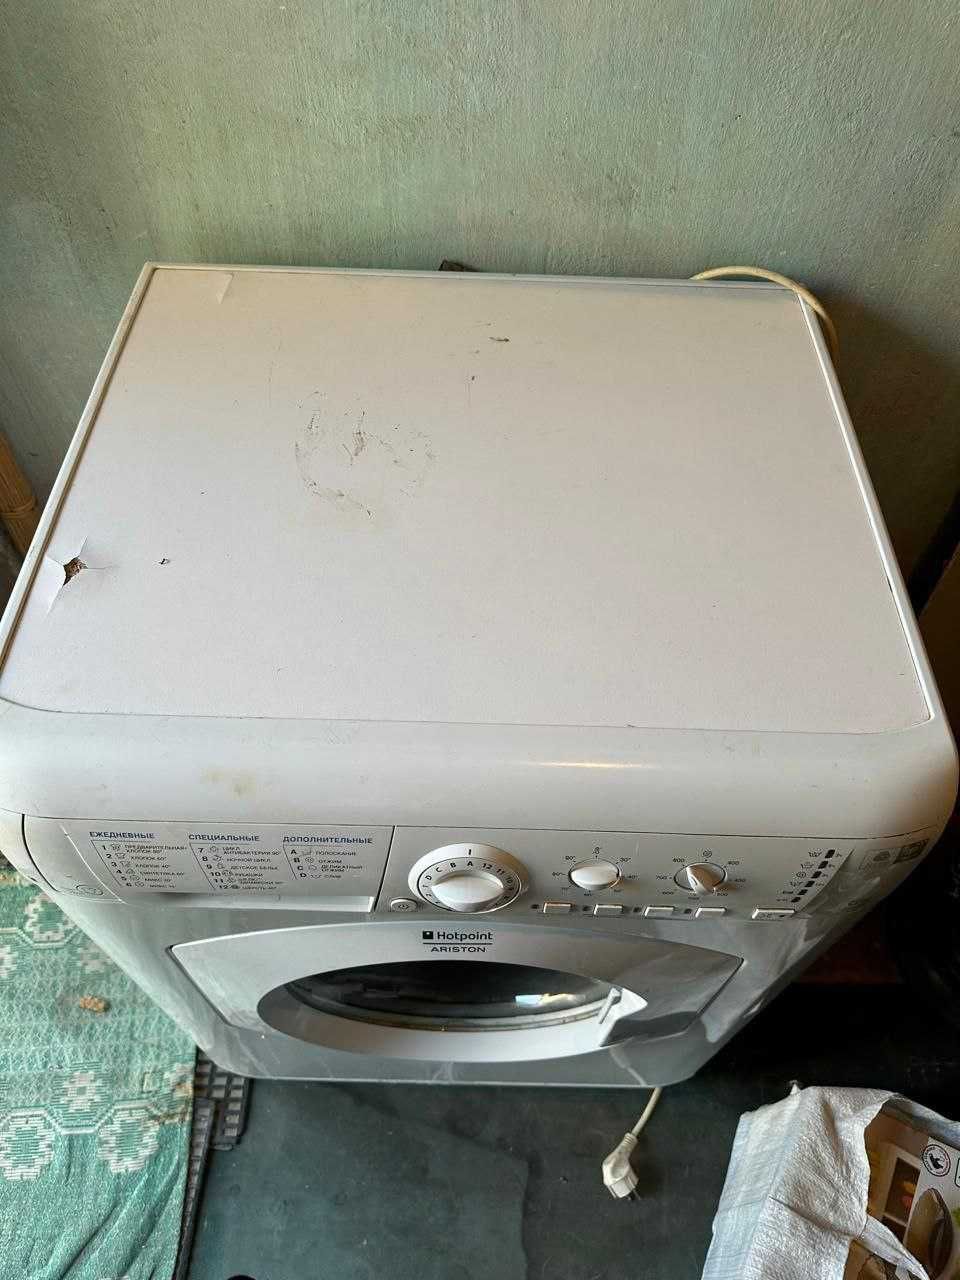 Продам стиральную машинку б/у. Фирма Hotpoint Ariston. На 6 кг